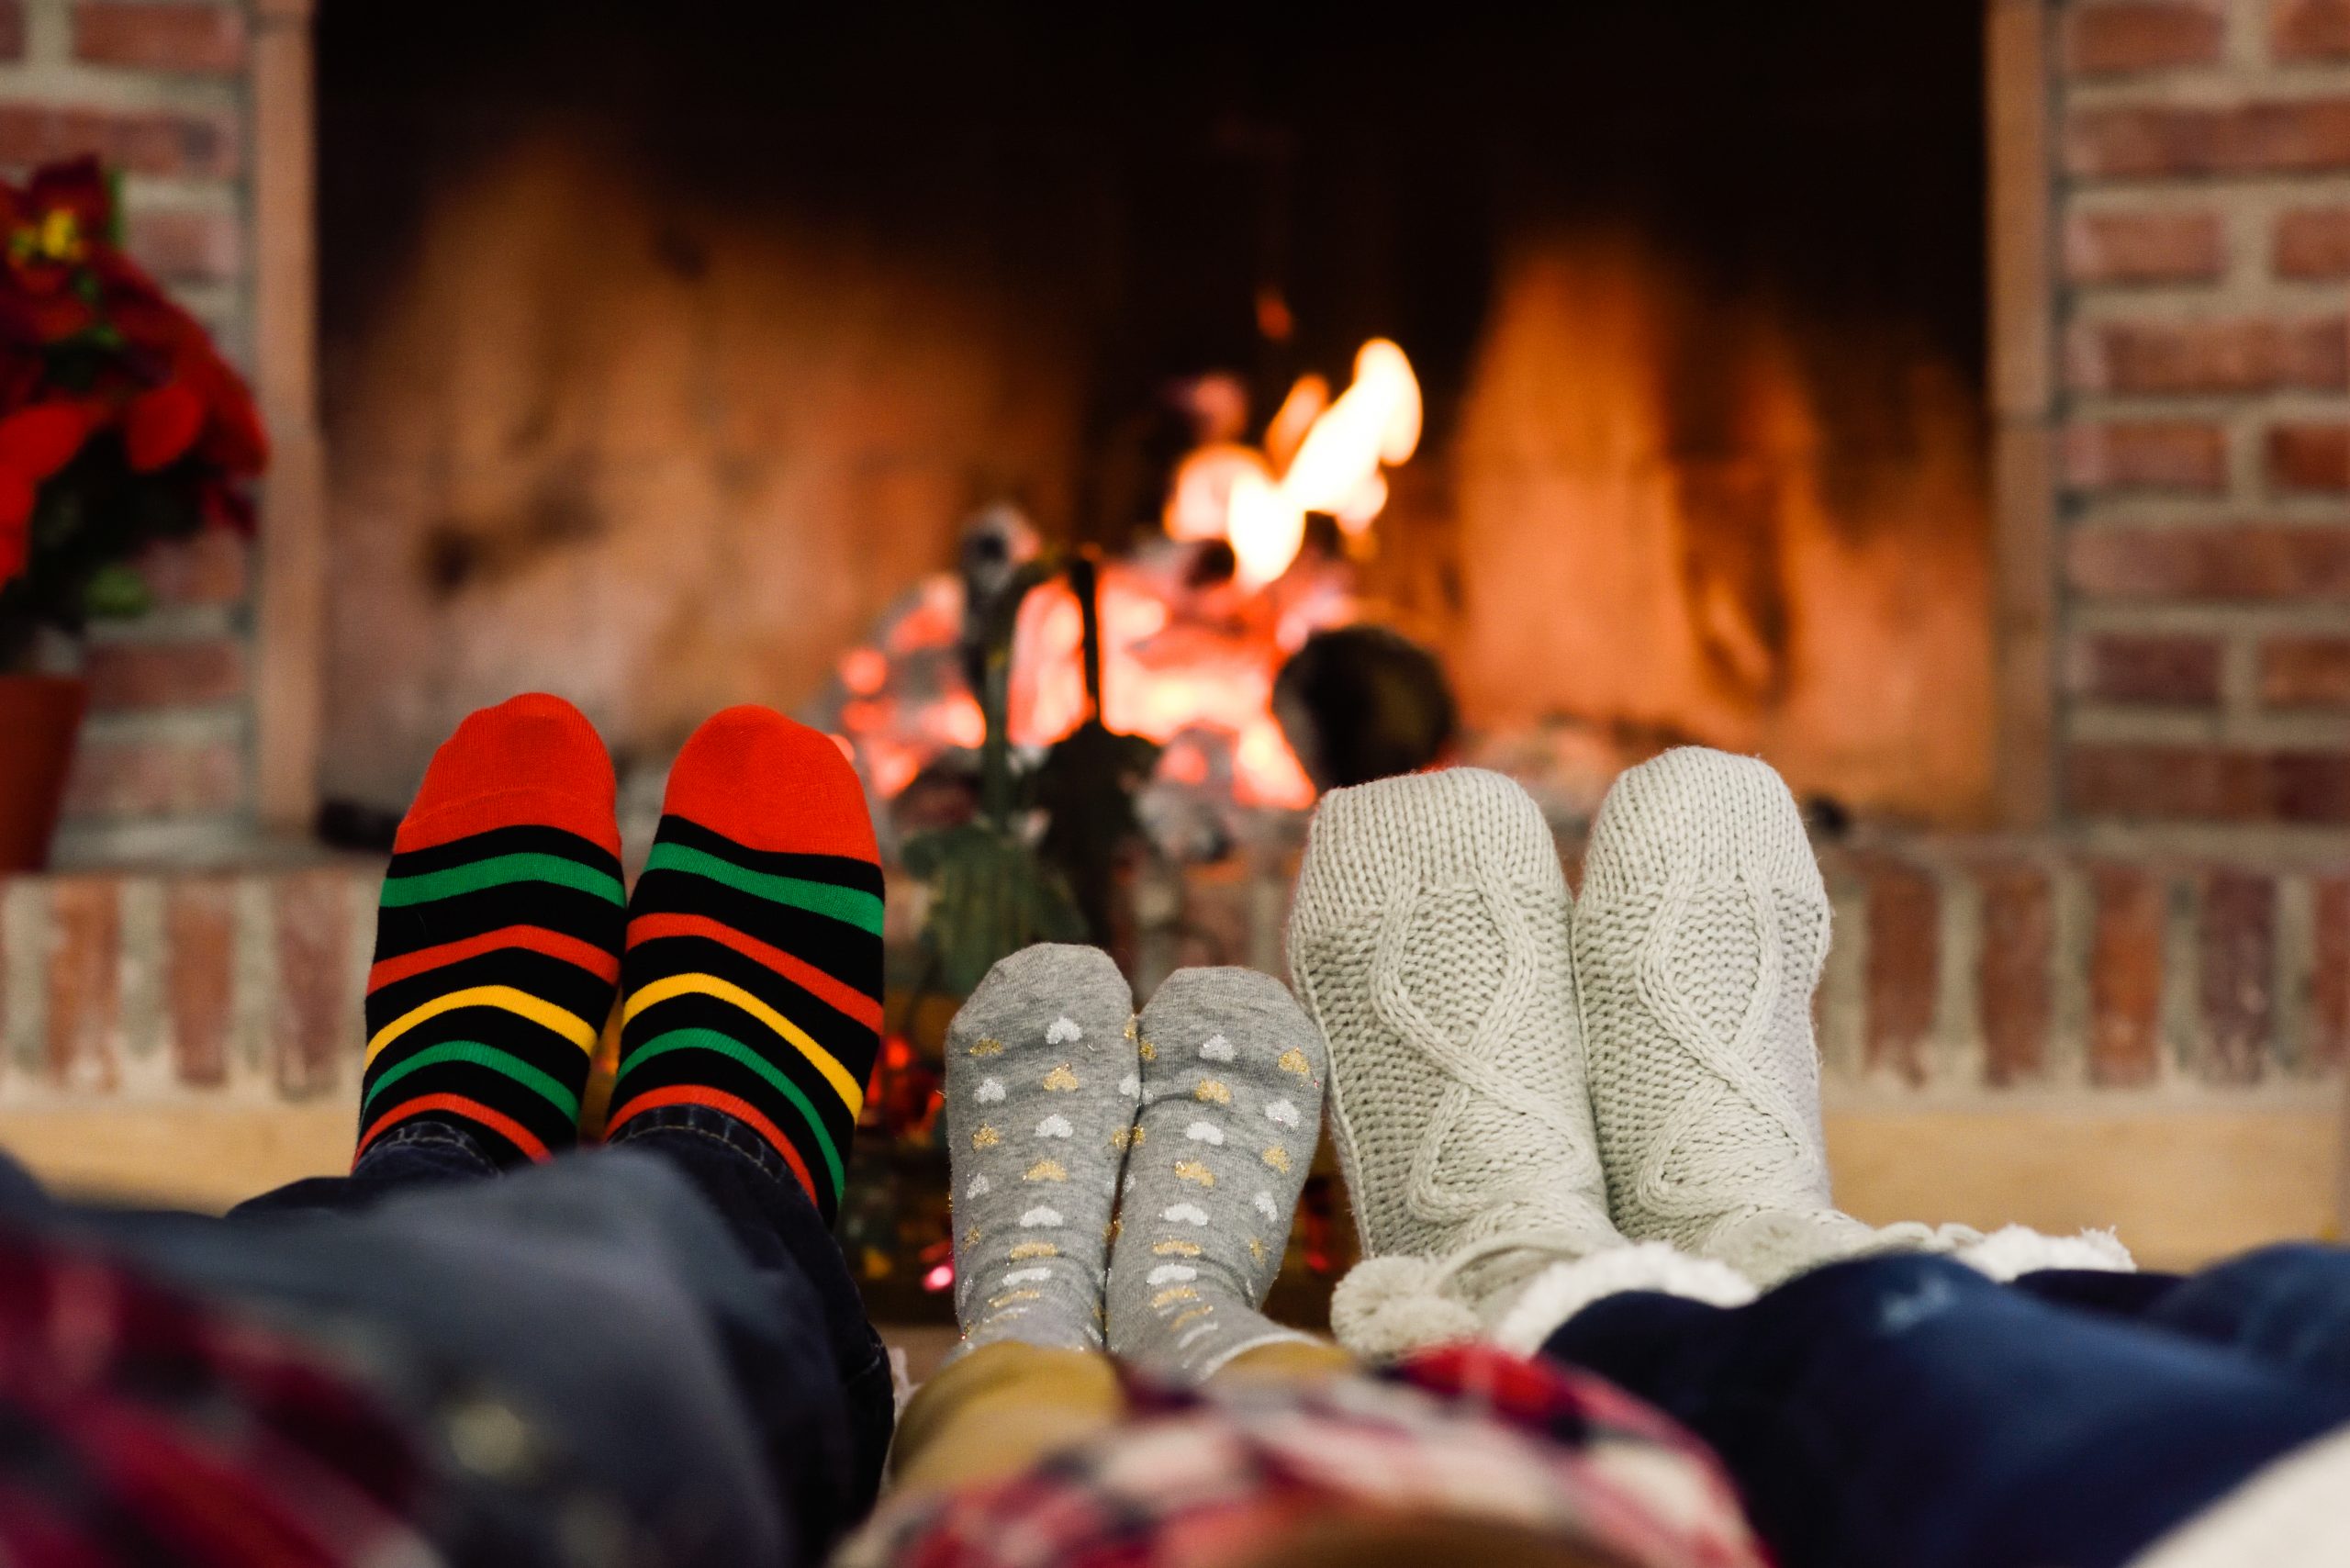 Три пары ног у. Ноги у камина. Уютные носочки. Семья у камина в Рождество. Уют и тепло.